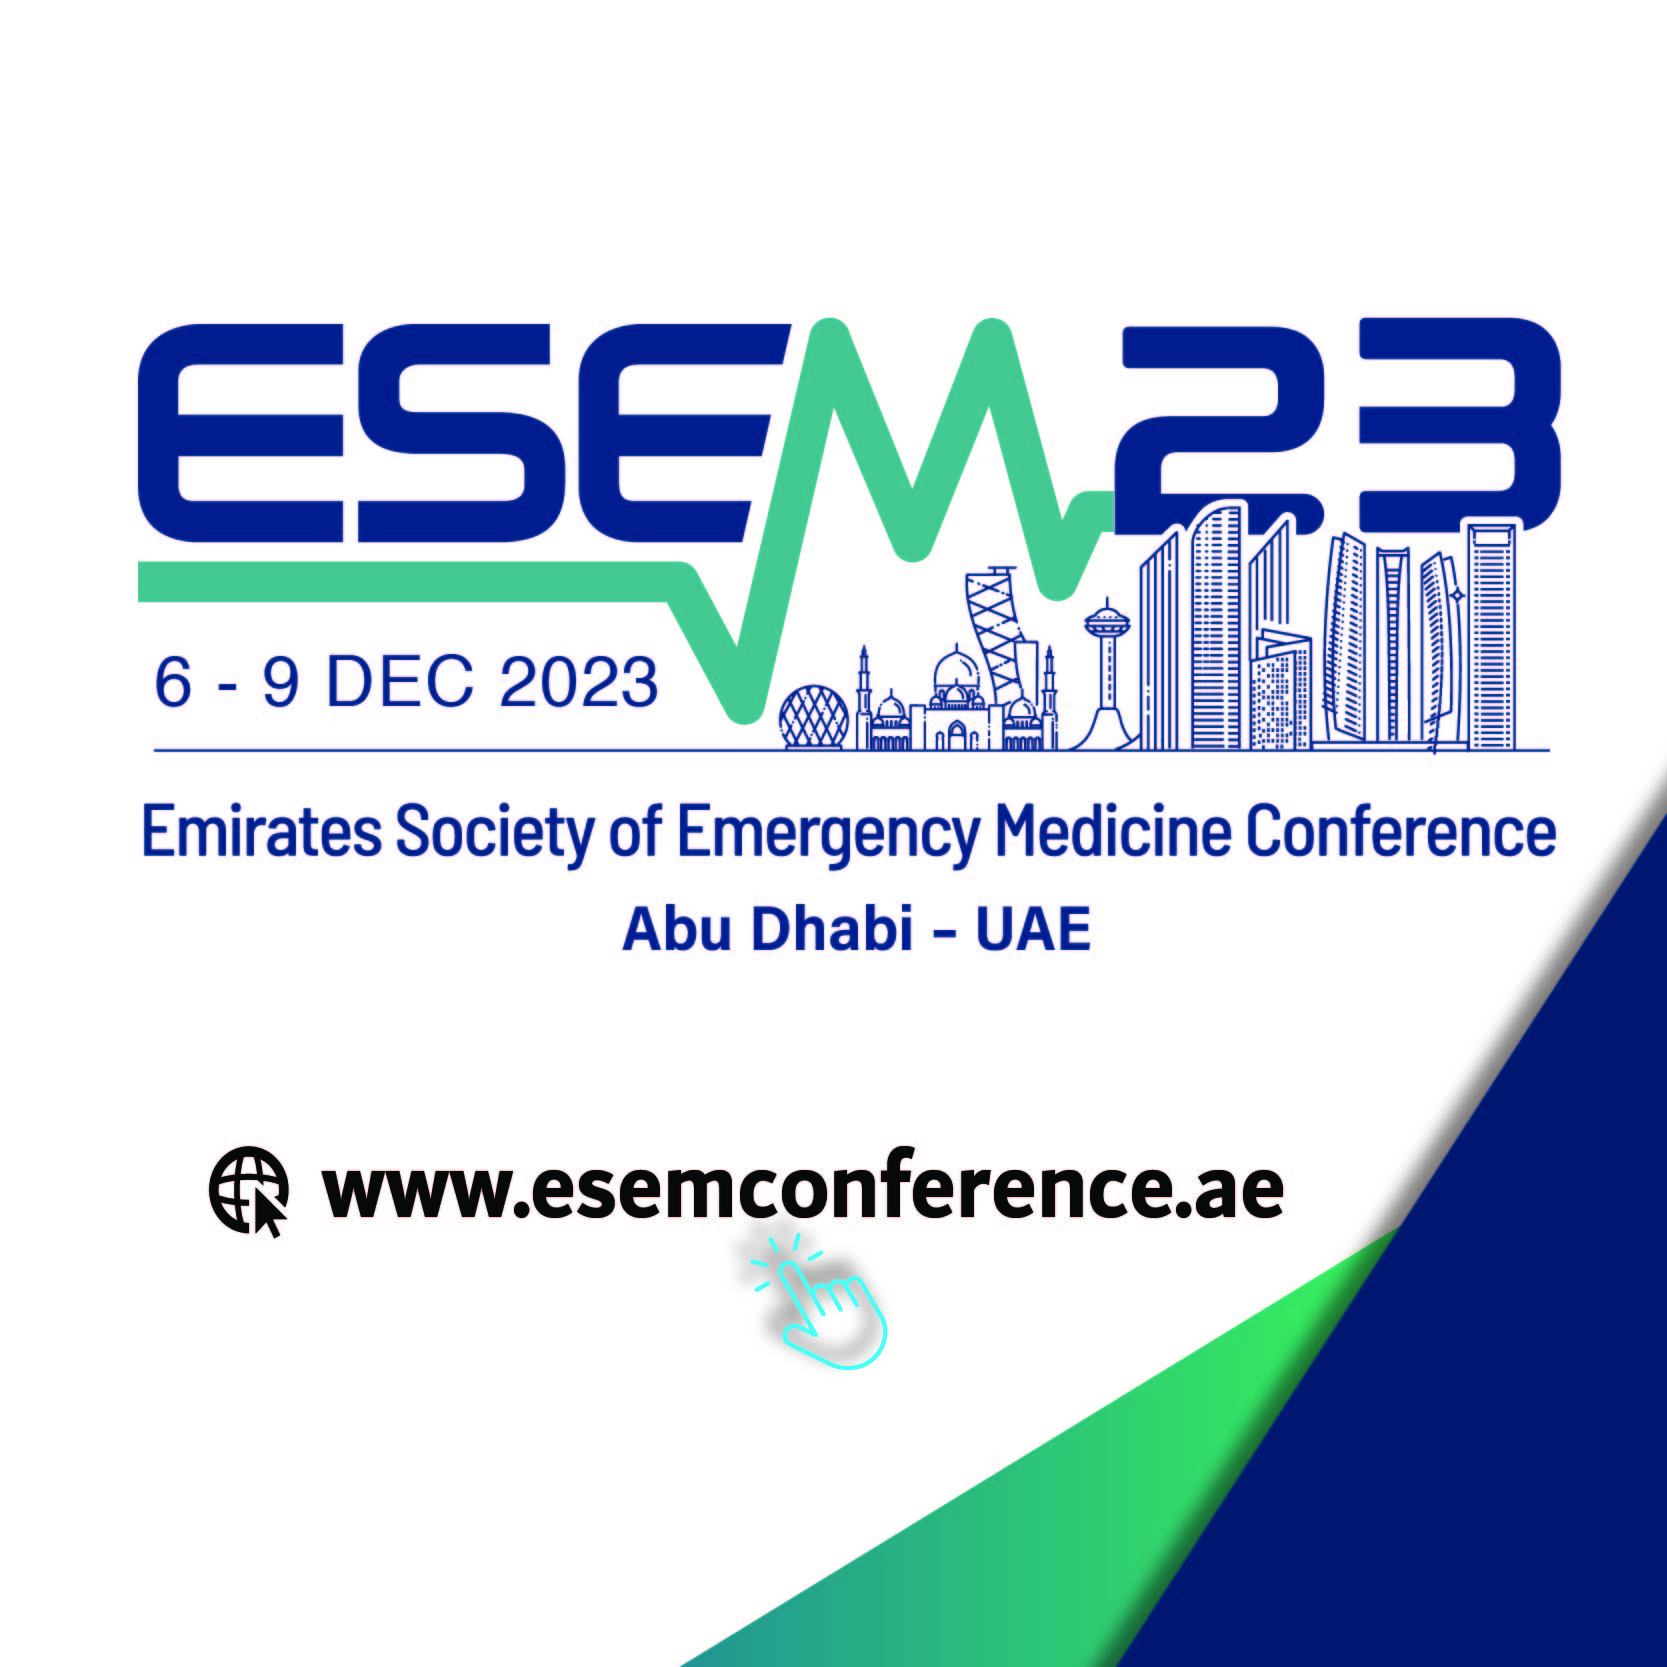 ESEM23 Conference